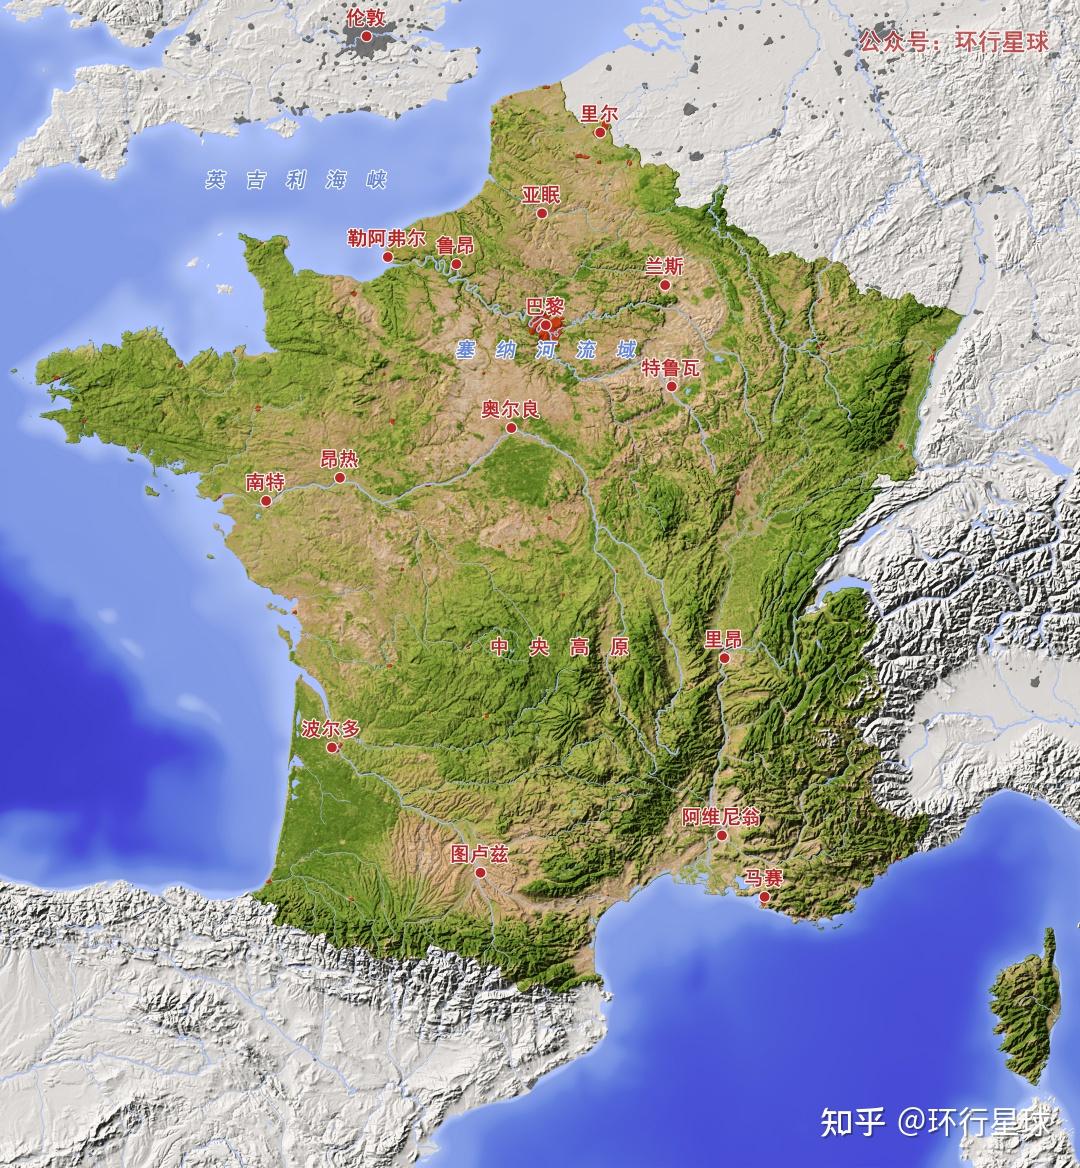 70塞纳河并非最长,却是最重要的一个法国境内围绕中央高原有多条